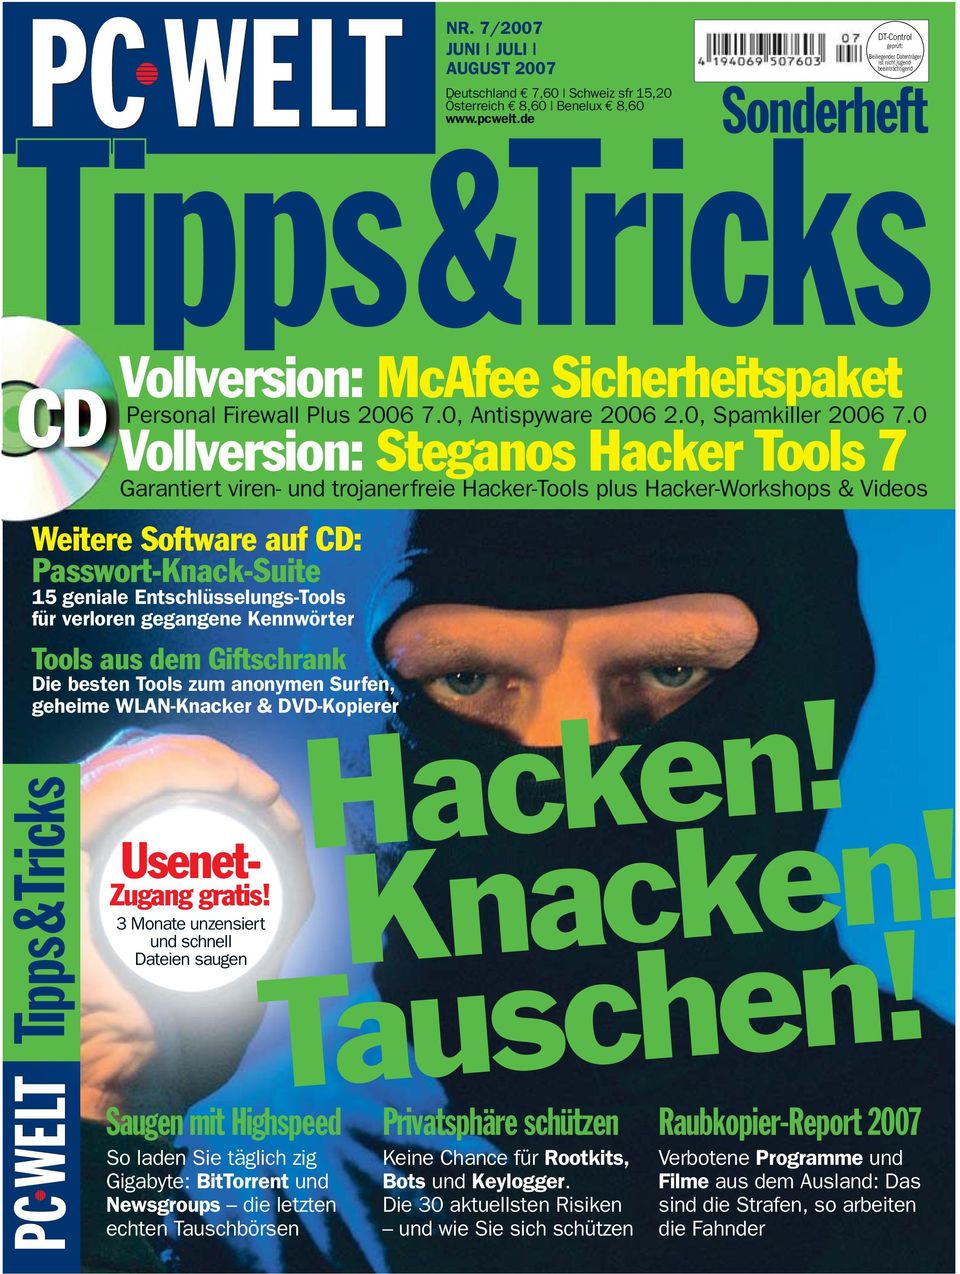 WLAN-Knacker & DVD-Kopierer Tipps&Tricks Vollversion: McAfee Sicherheitspaket Personal Firewall Plus 2006 7.0, Antispyware 2006 2.0, Spamkiller 2006 7.